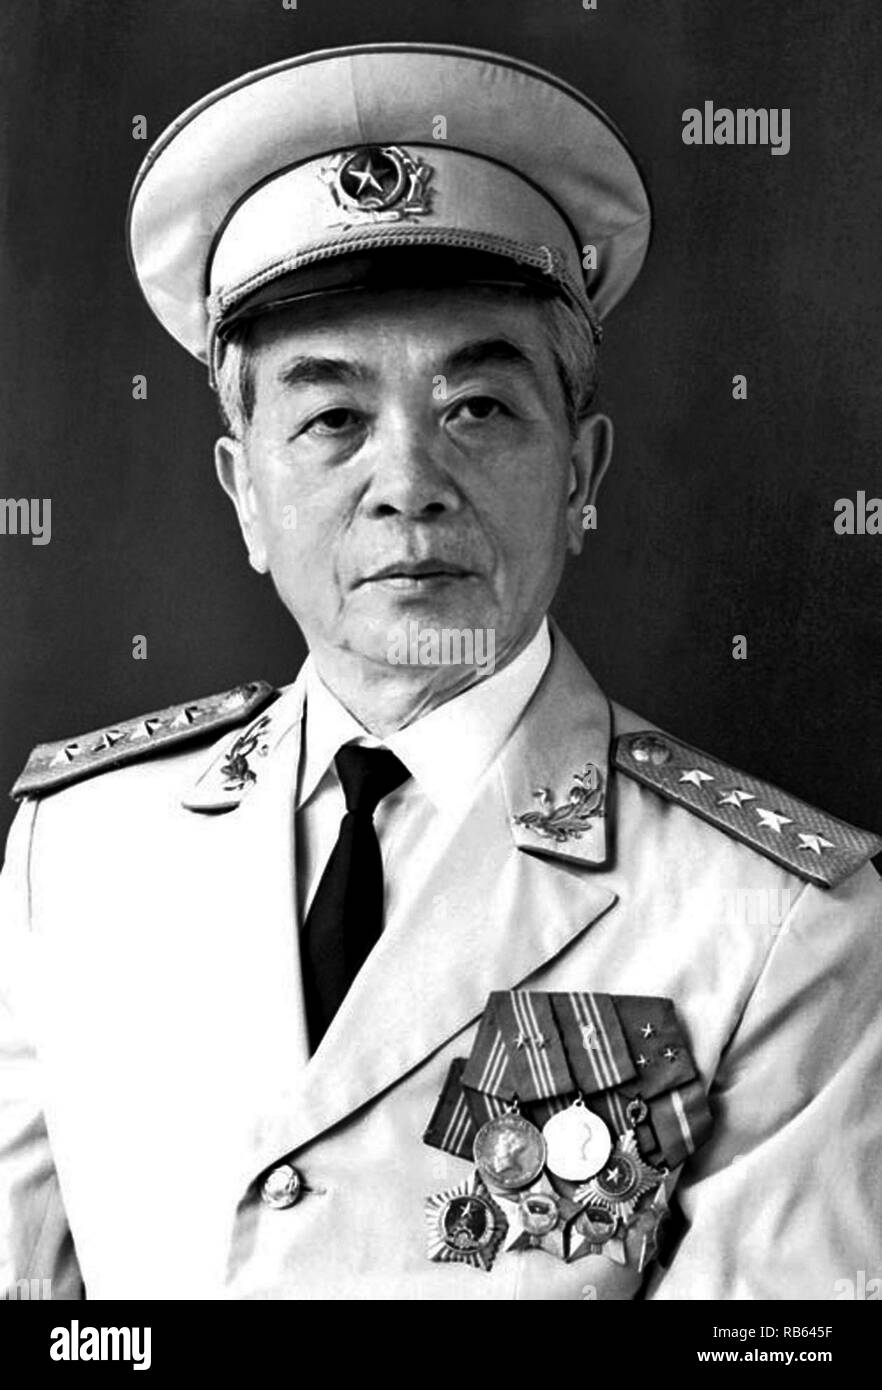 Vo Nguyen Giap (1911 - vom 4. Oktober 2013) Allgemein in der vietnamesischen Volksarmee und Politiker. Er zuerst zum Vorsprung wuchs während des Zweiten Weltkriegs, wo er als militärischer Führer der Viet Minh Widerstand gegen die japanische Besatzung Vietnam serviert. Giap war einer der wichtigsten Befehlshaber in zwei Kriegen: Der erste Indochina Krieg (1946-54) und der Vietnam Krieg (1954-1975). Er beteiligte sich an der folgenden historisch bedeutenden Schlachten: Lang Son (1950), Hoa Binh (1951-52), Dien Bien Phu (1954), der Tet-offensive (1968), die Ostern Offensive (1972), und der abschließende Ho Chi Minh Kampagne (1975). Stockfoto